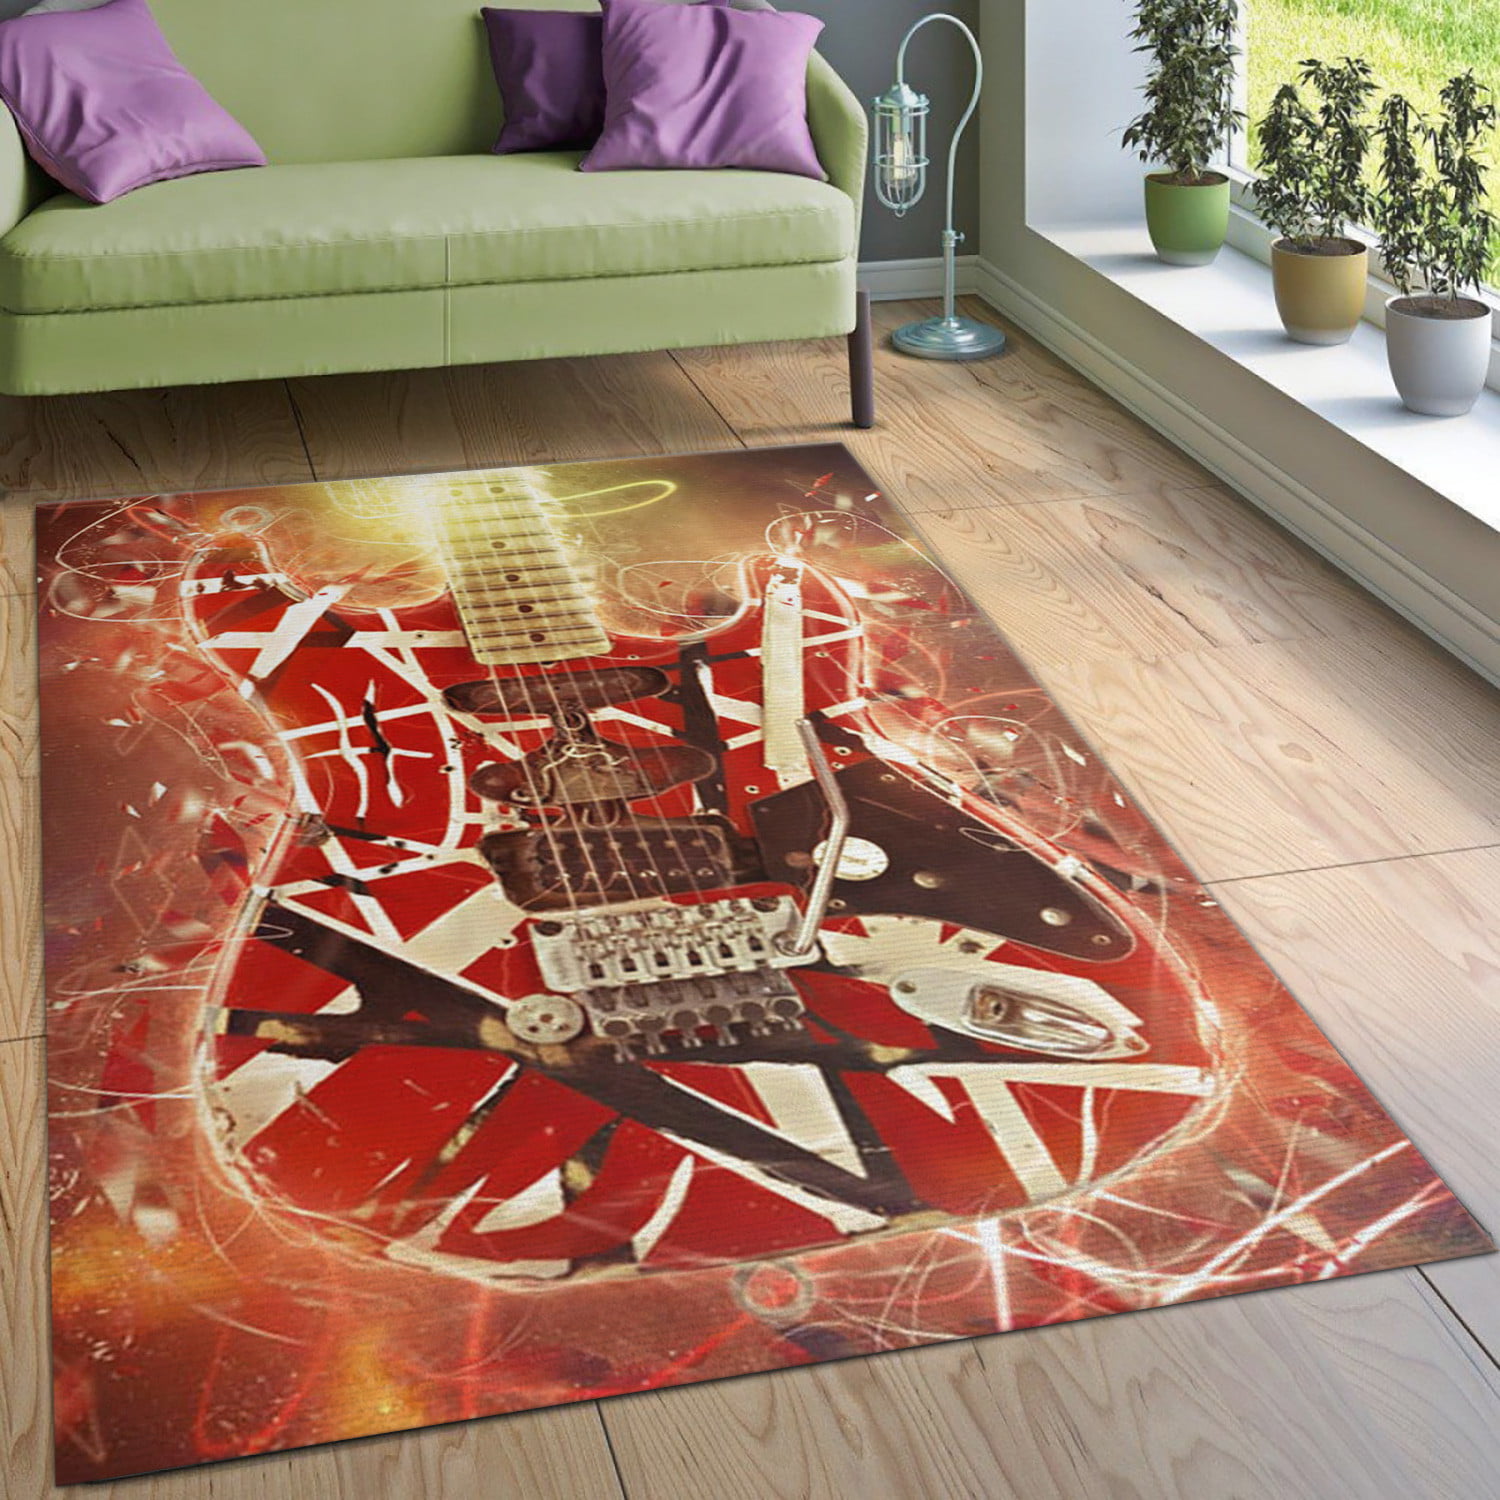 Eddie Van Halen Guitar Instrument Area Rug Living room and bedroom Rug Home Decor